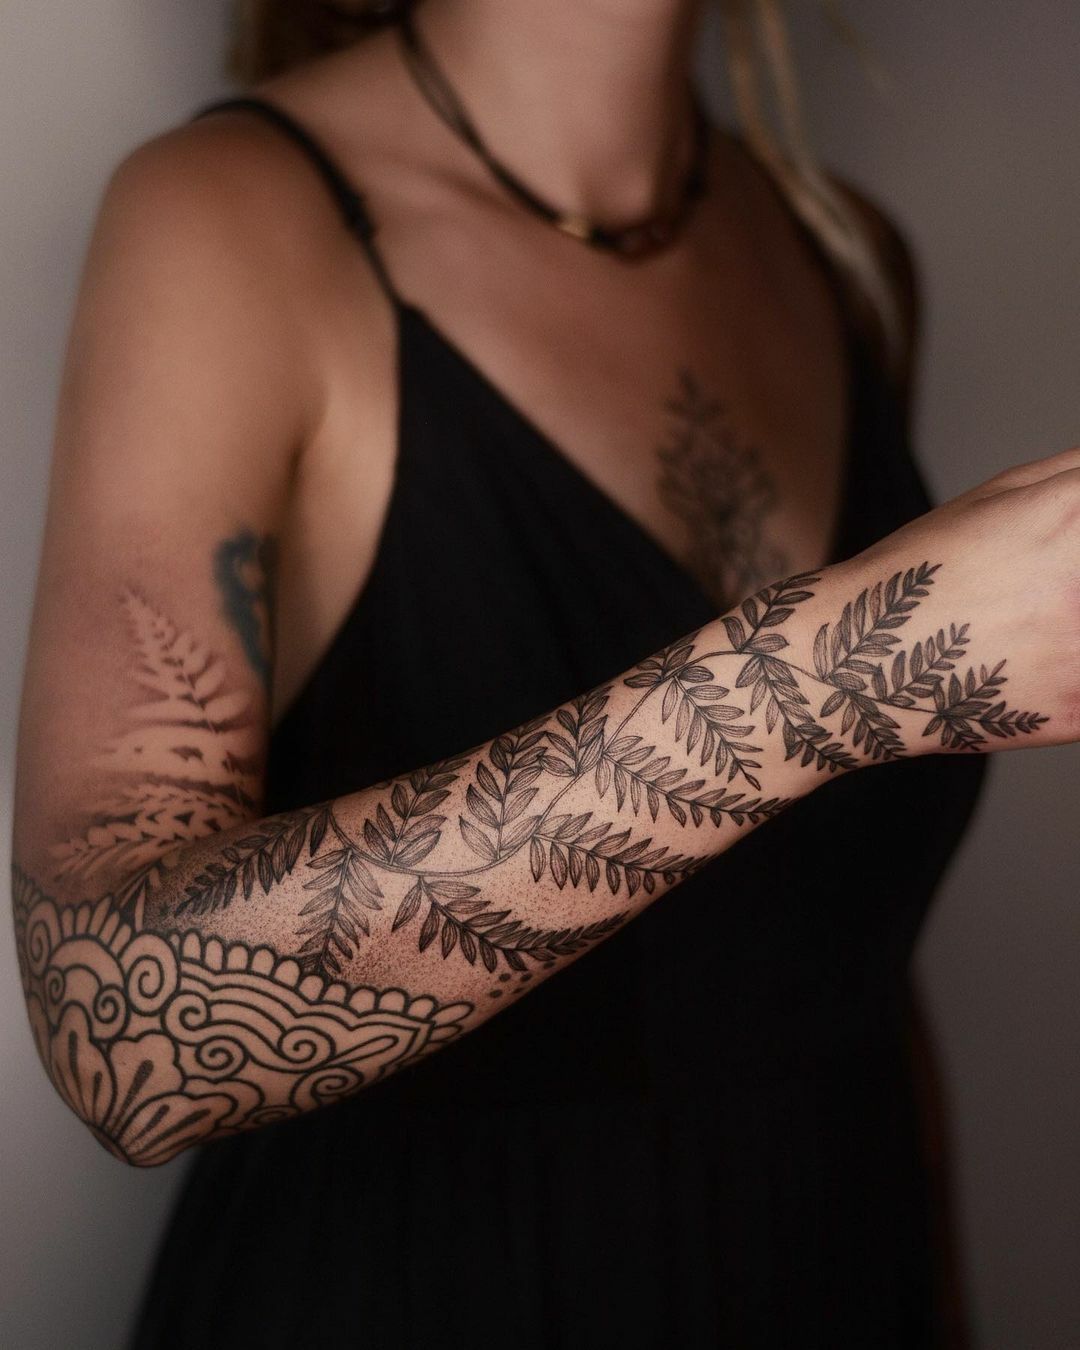 L’art du tatouage de © dzo lamka de wroclaw, pologne